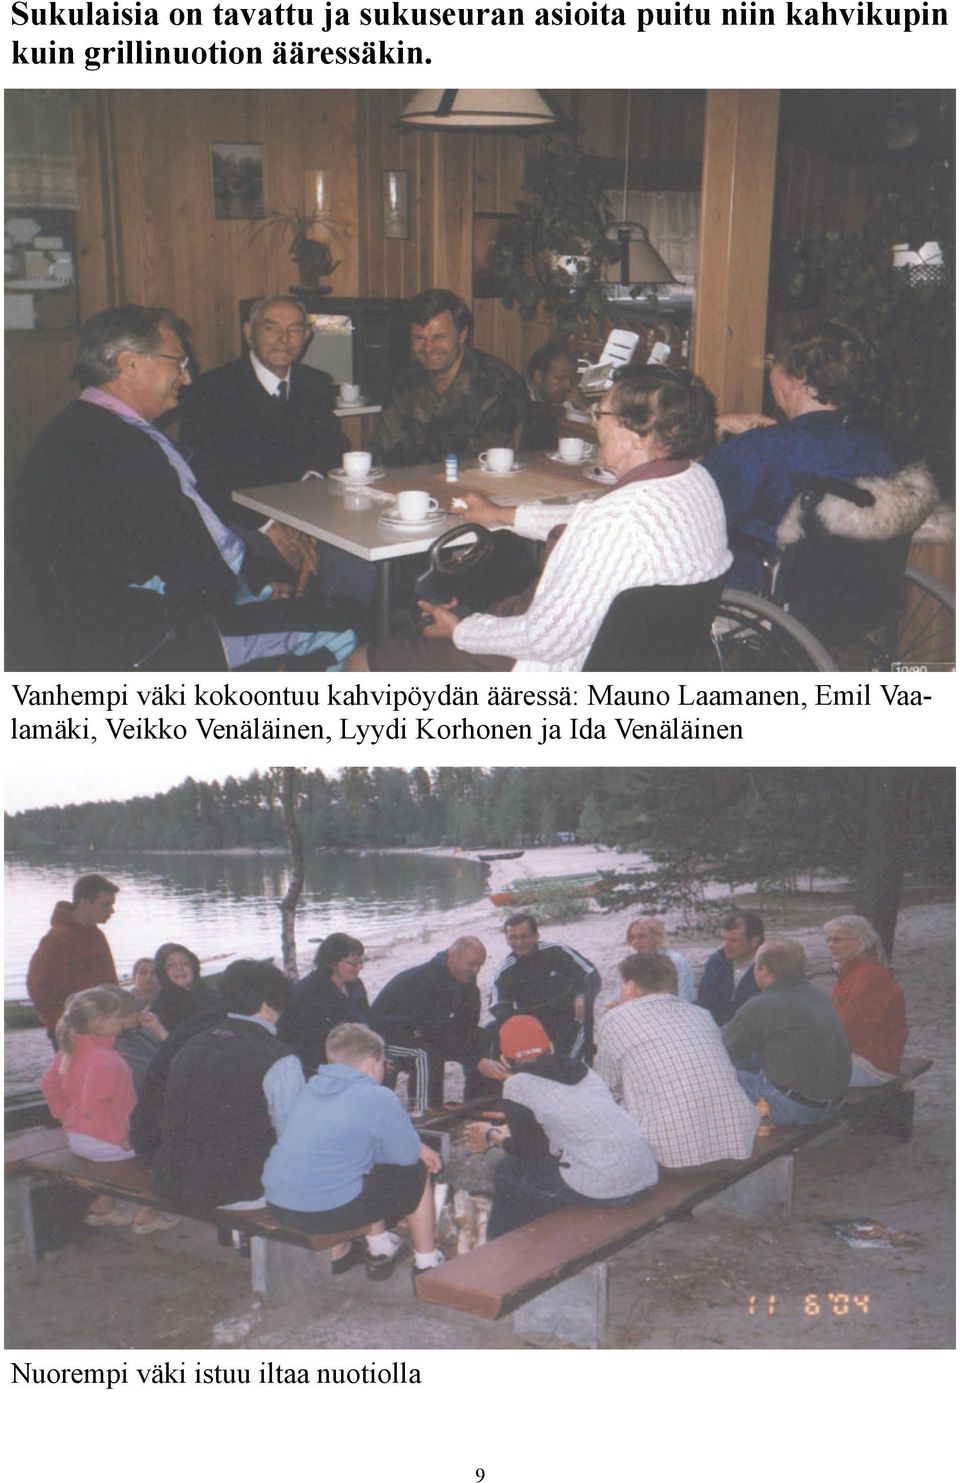 Vanhempi väki kokoontuu kahvipöydän ääressä: Mauno Laamanen, Emil